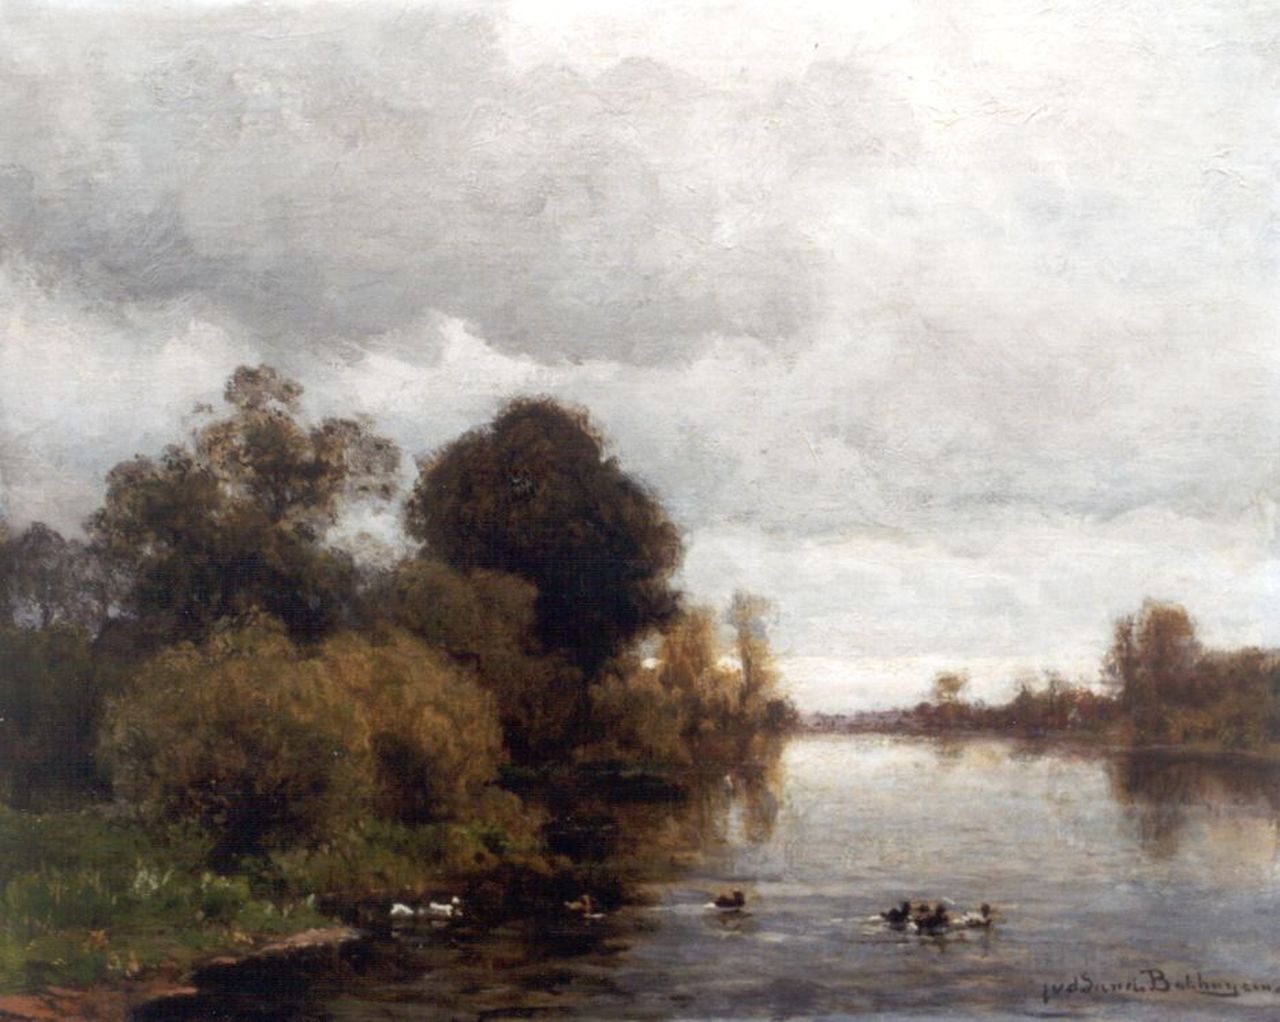 Sande Bakhuyzen J.J. van de | Julius Jacobus van de Sande Bakhuyzen, A river landscape, Öl auf Leinwand auf Holz 37,2 x 45,2 cm, signed l.r.